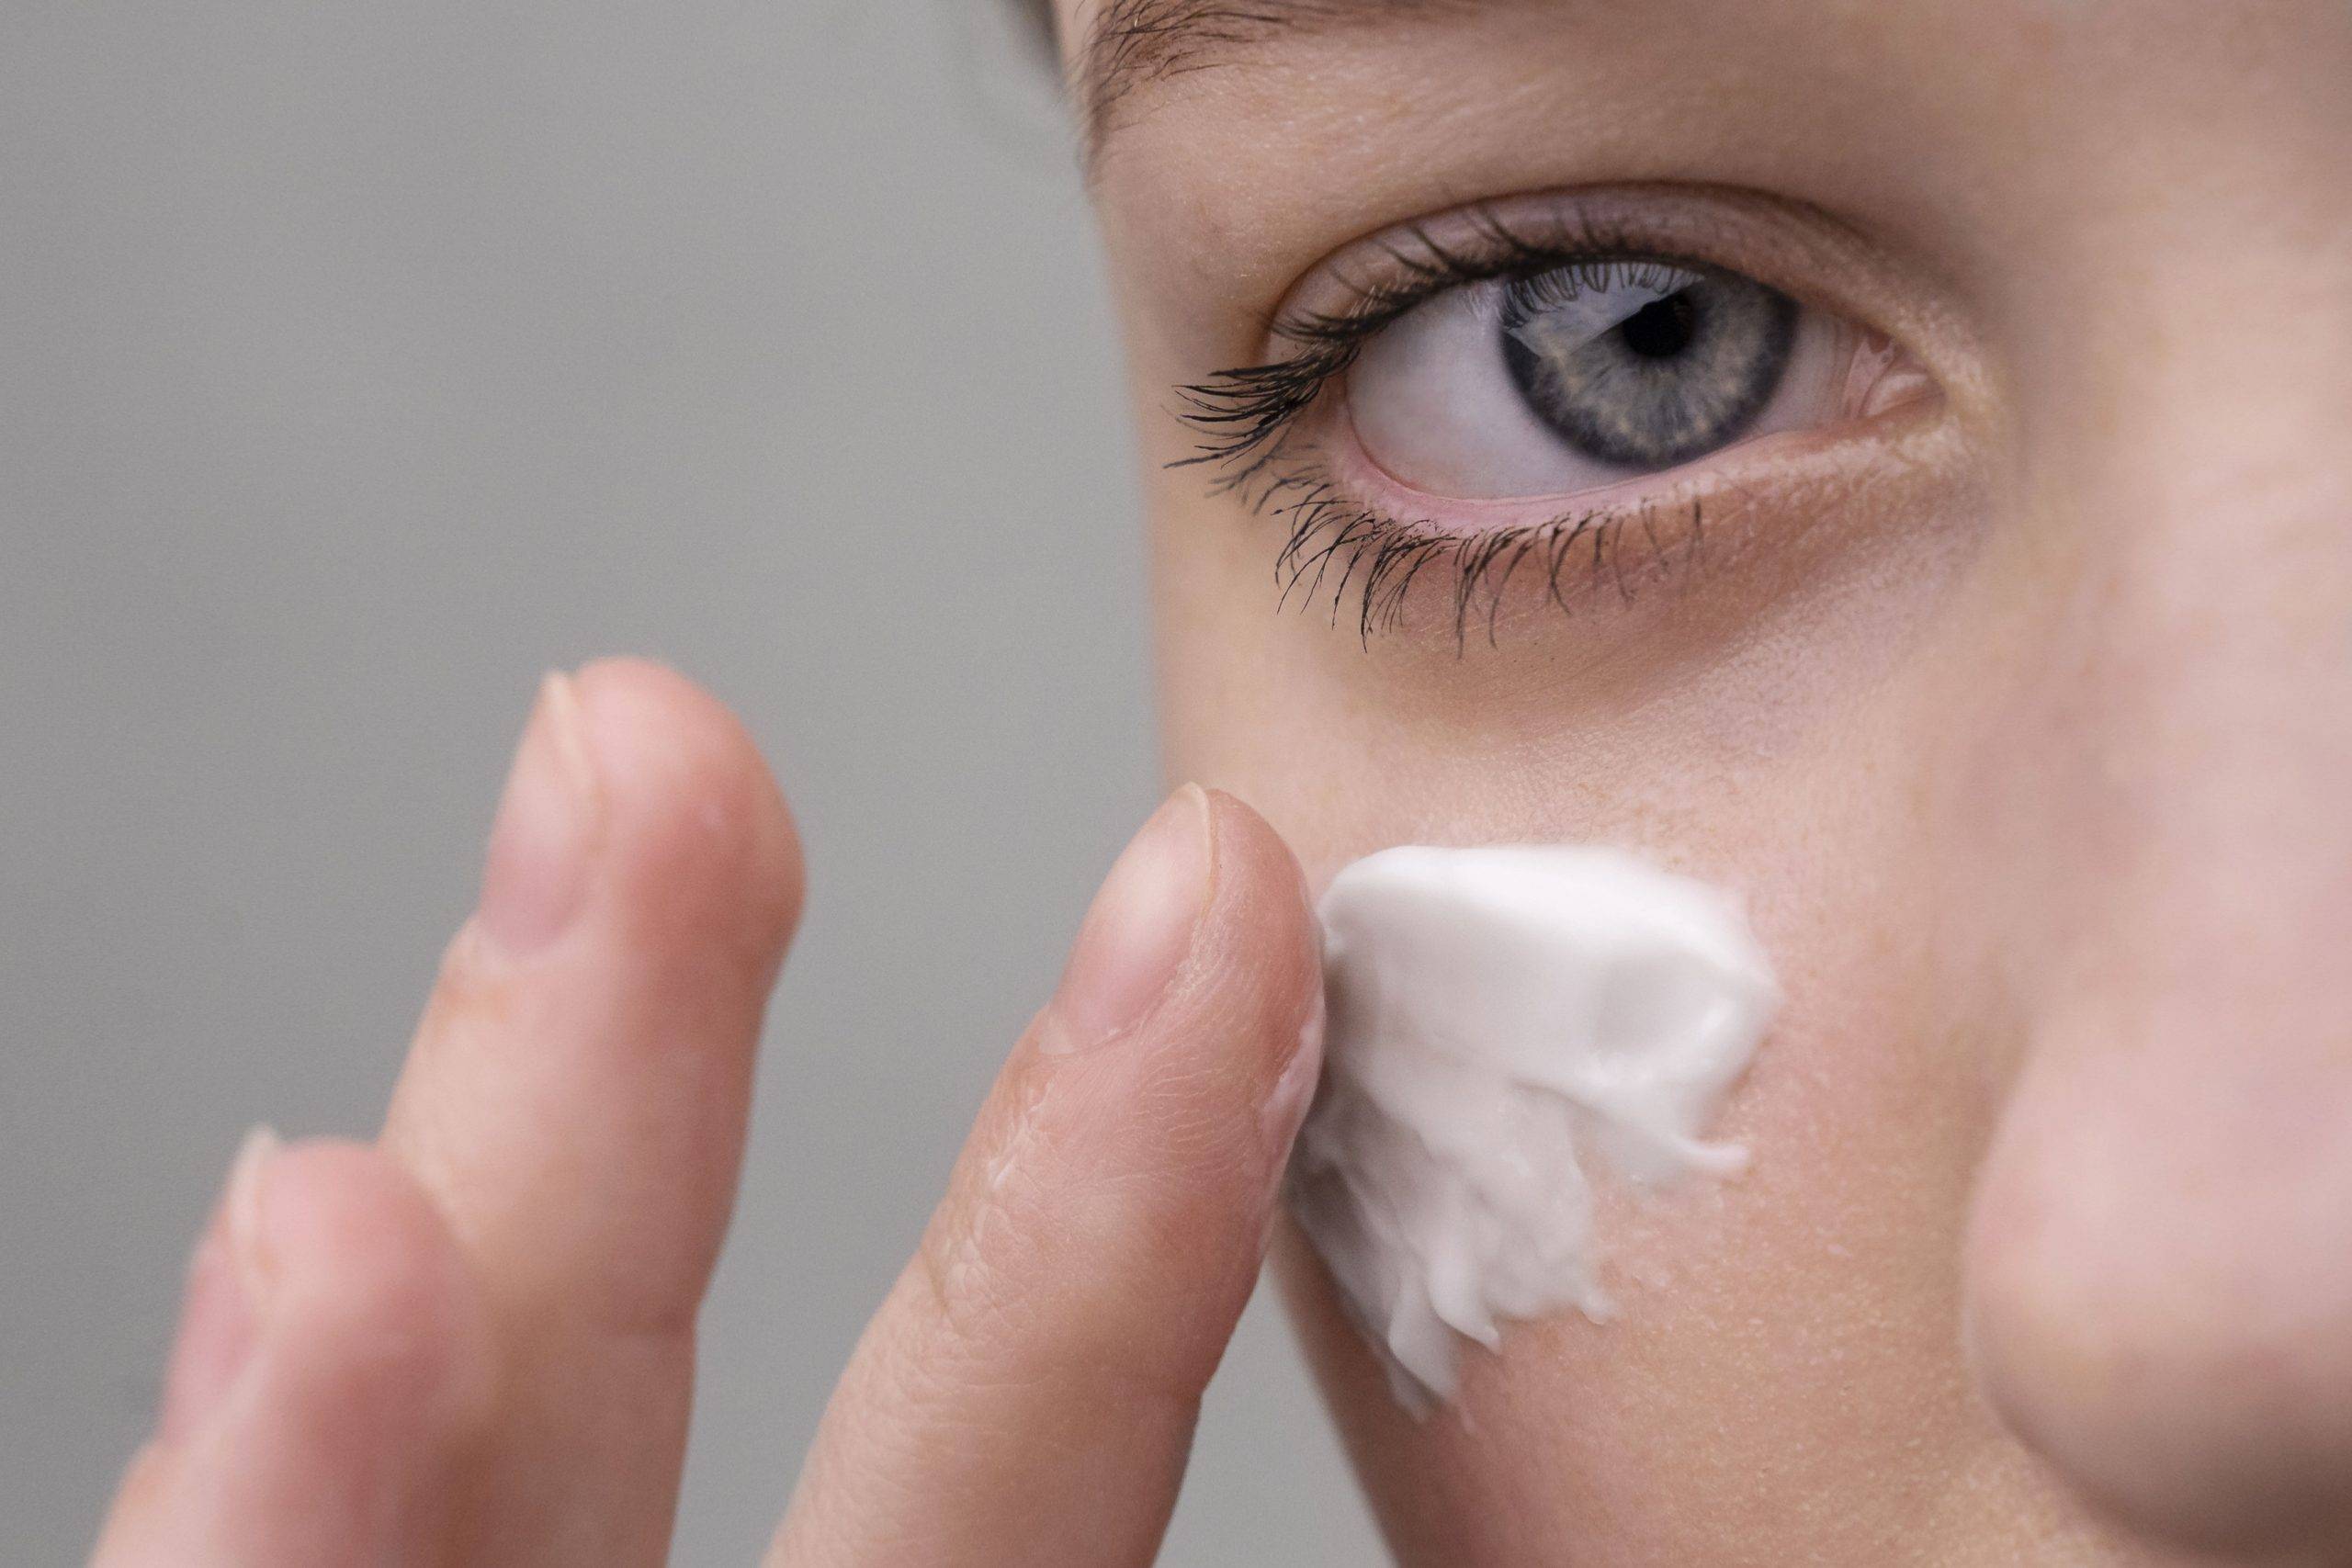 6 Eye Cream Mengandung Retinol, Bisa Dicoba untuk Usia 40an